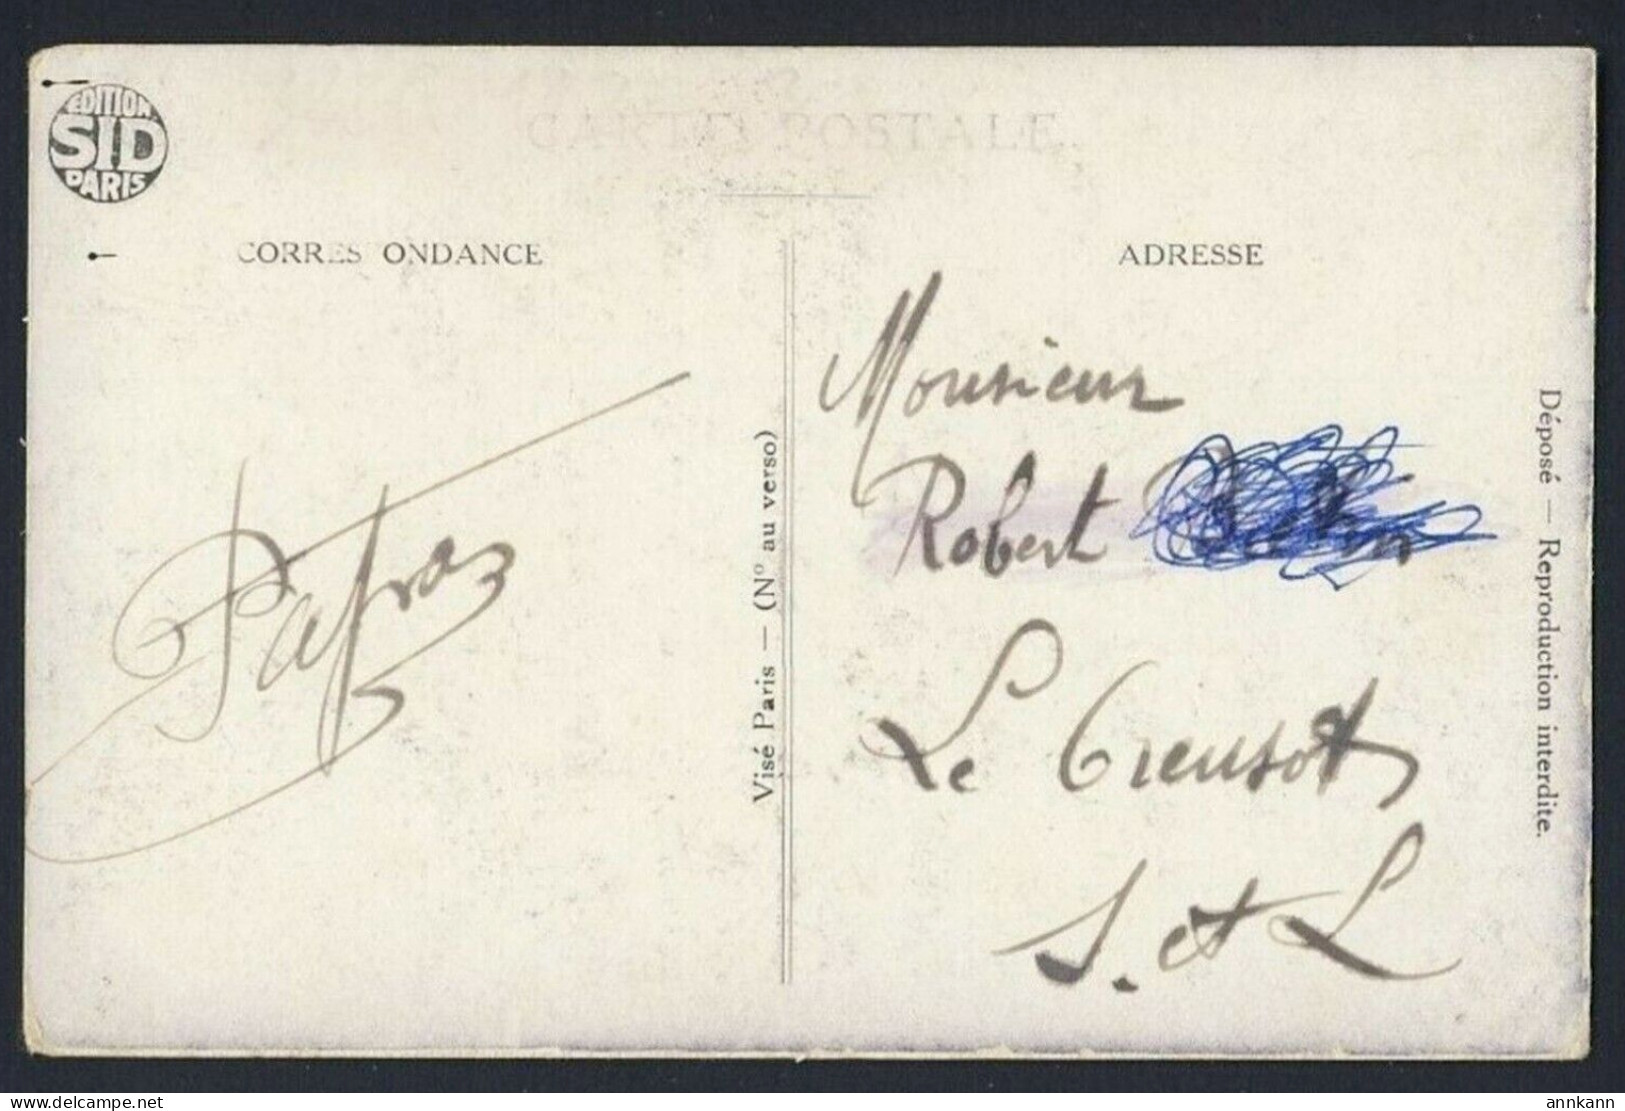 FRANCE - Picture Of 20 Vingt Francs Picture Of Note Bill, Soldier WWI - Monnaies (représentations)